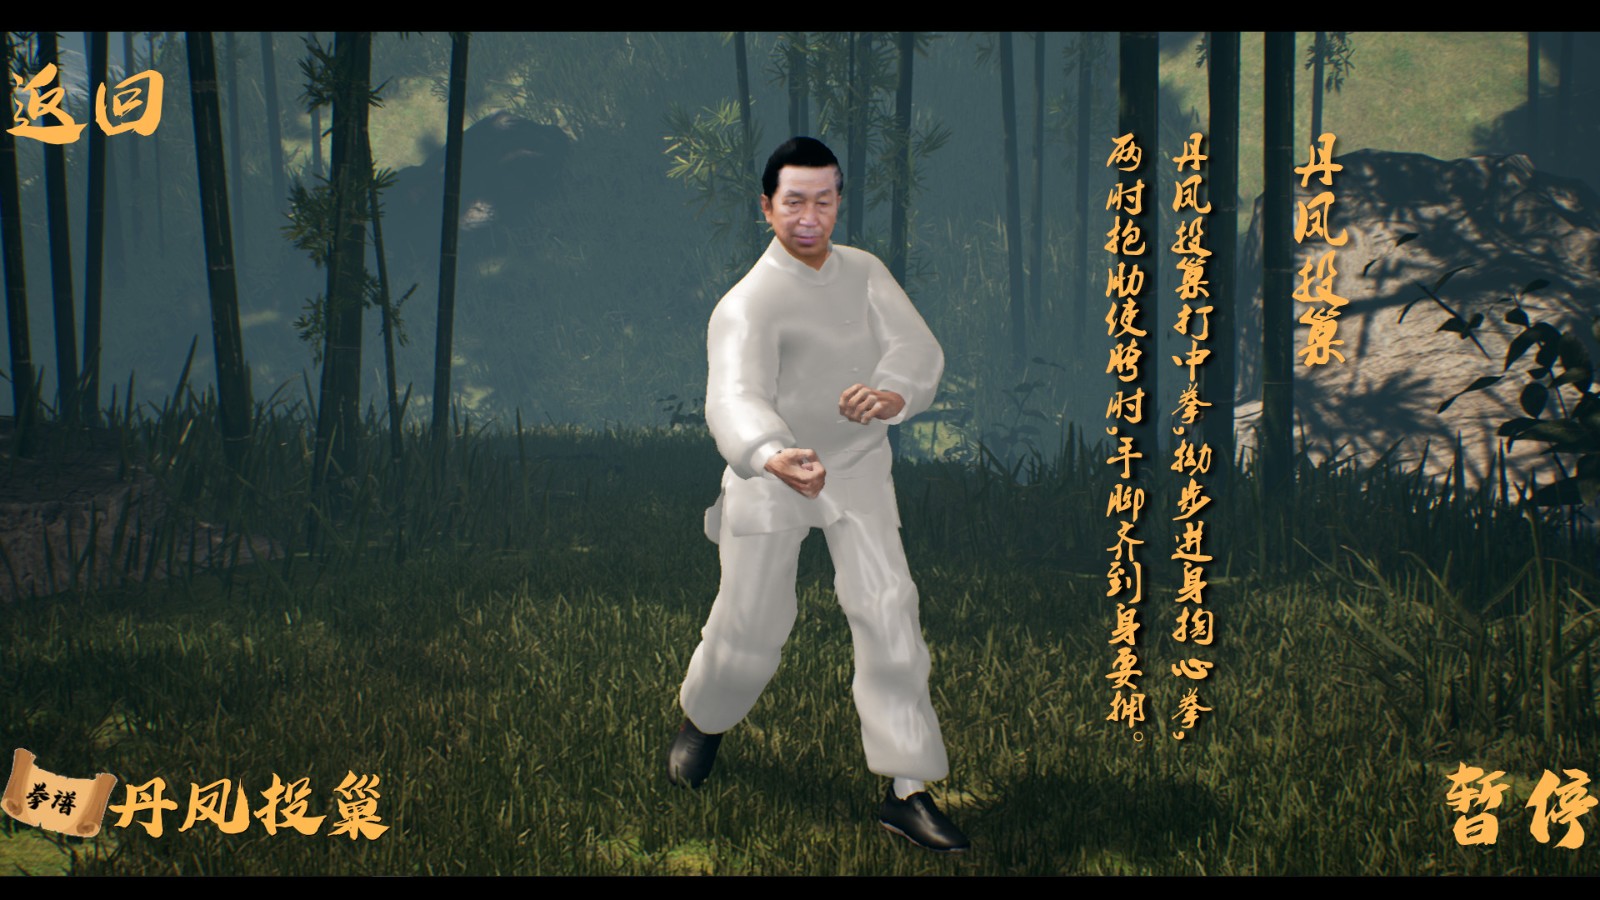 武术教学软件《中国传统武术》上架Steam